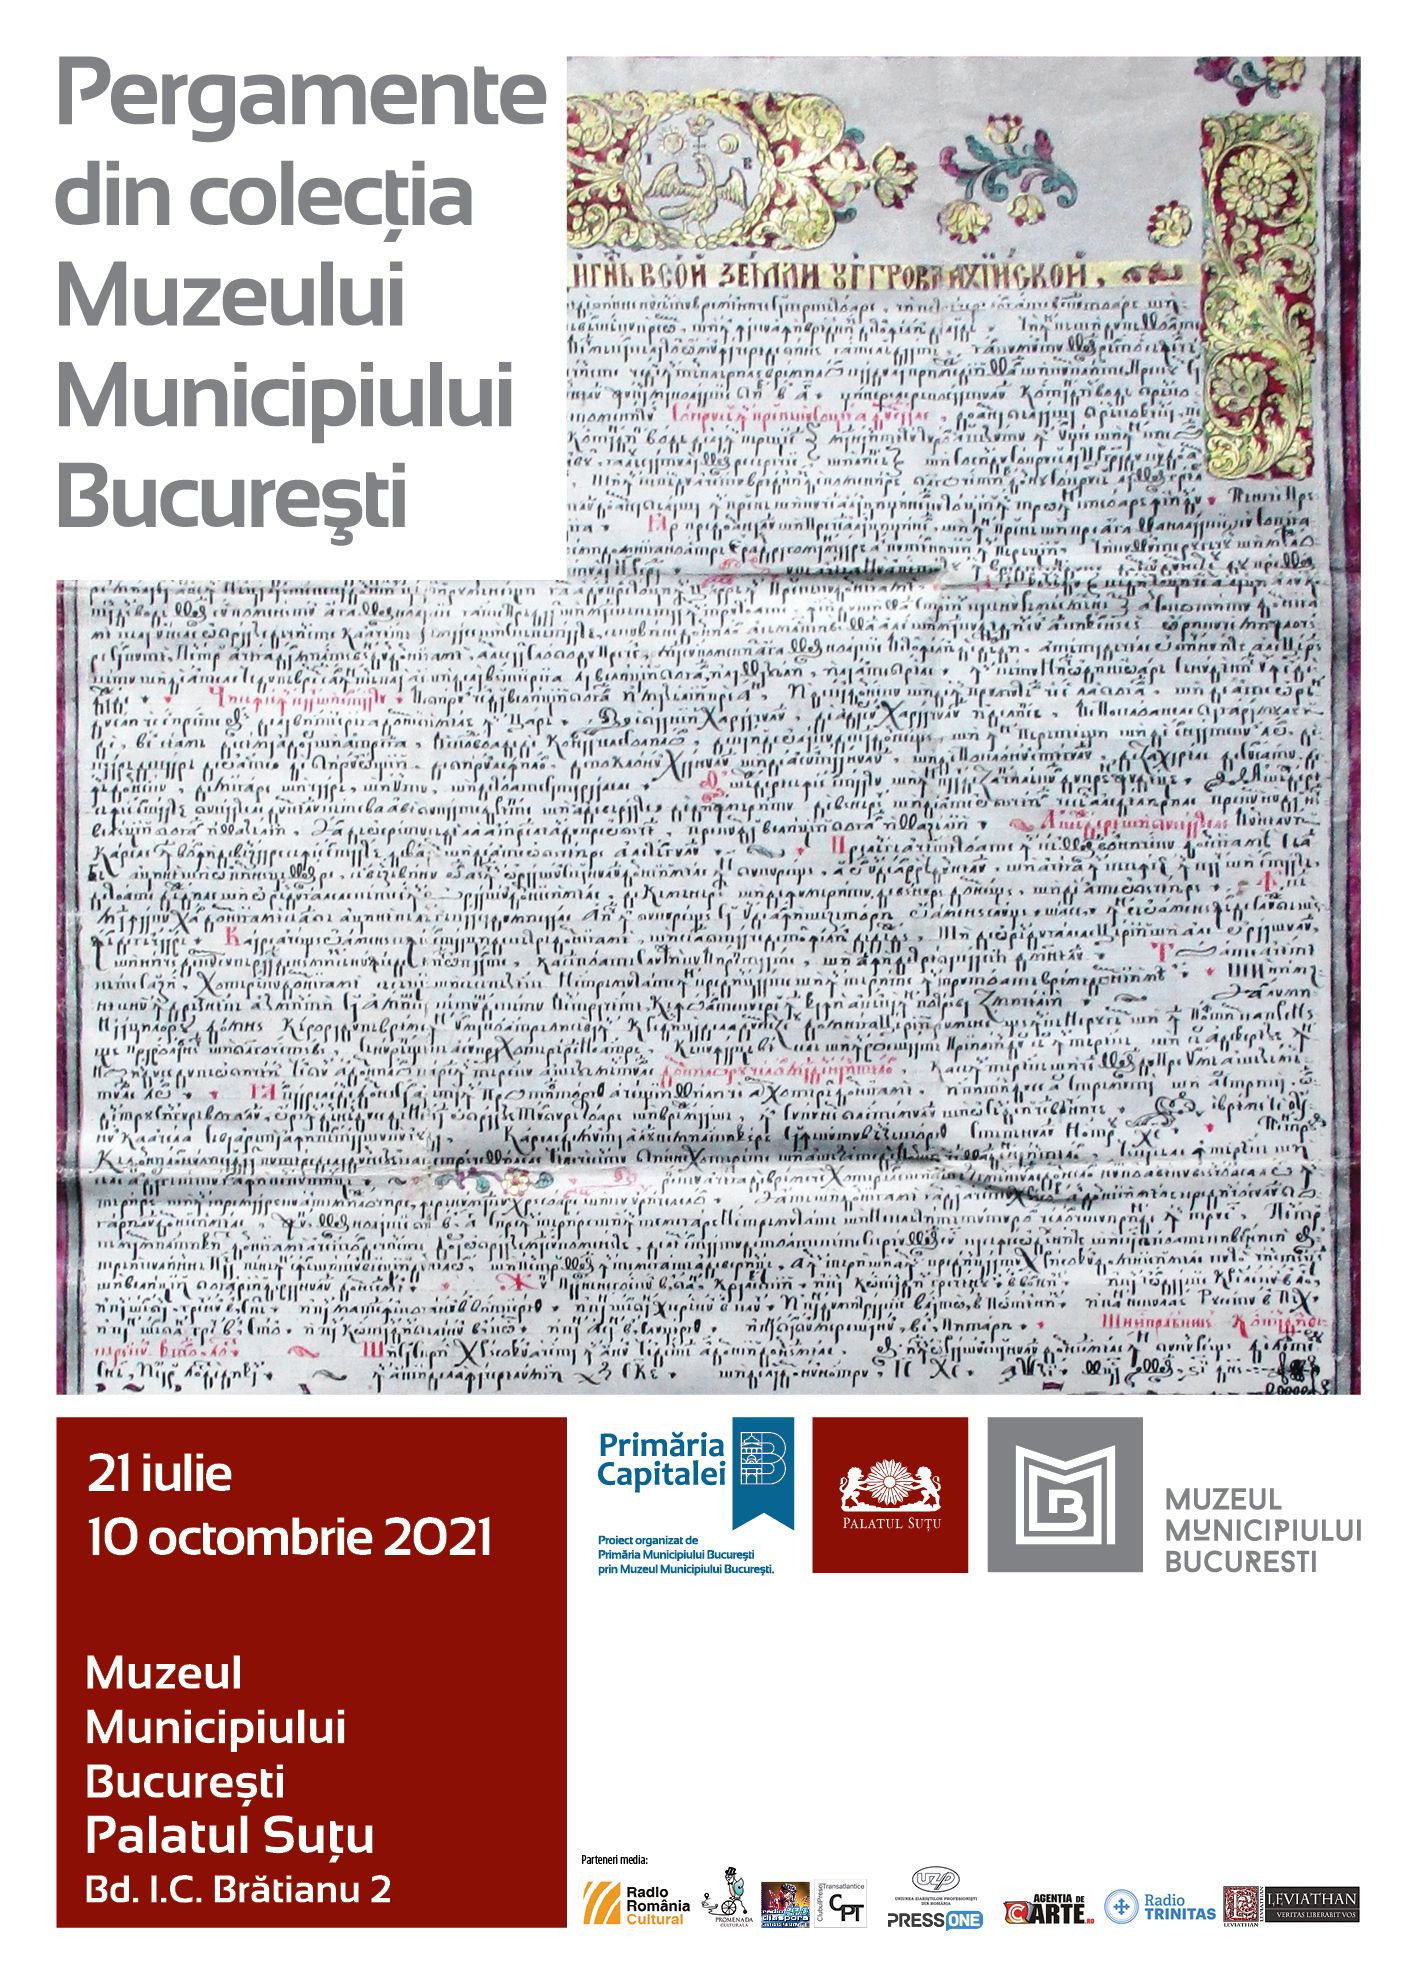 Colecție de documente medievale, expusă la Palatul Suțu din 21 iulie